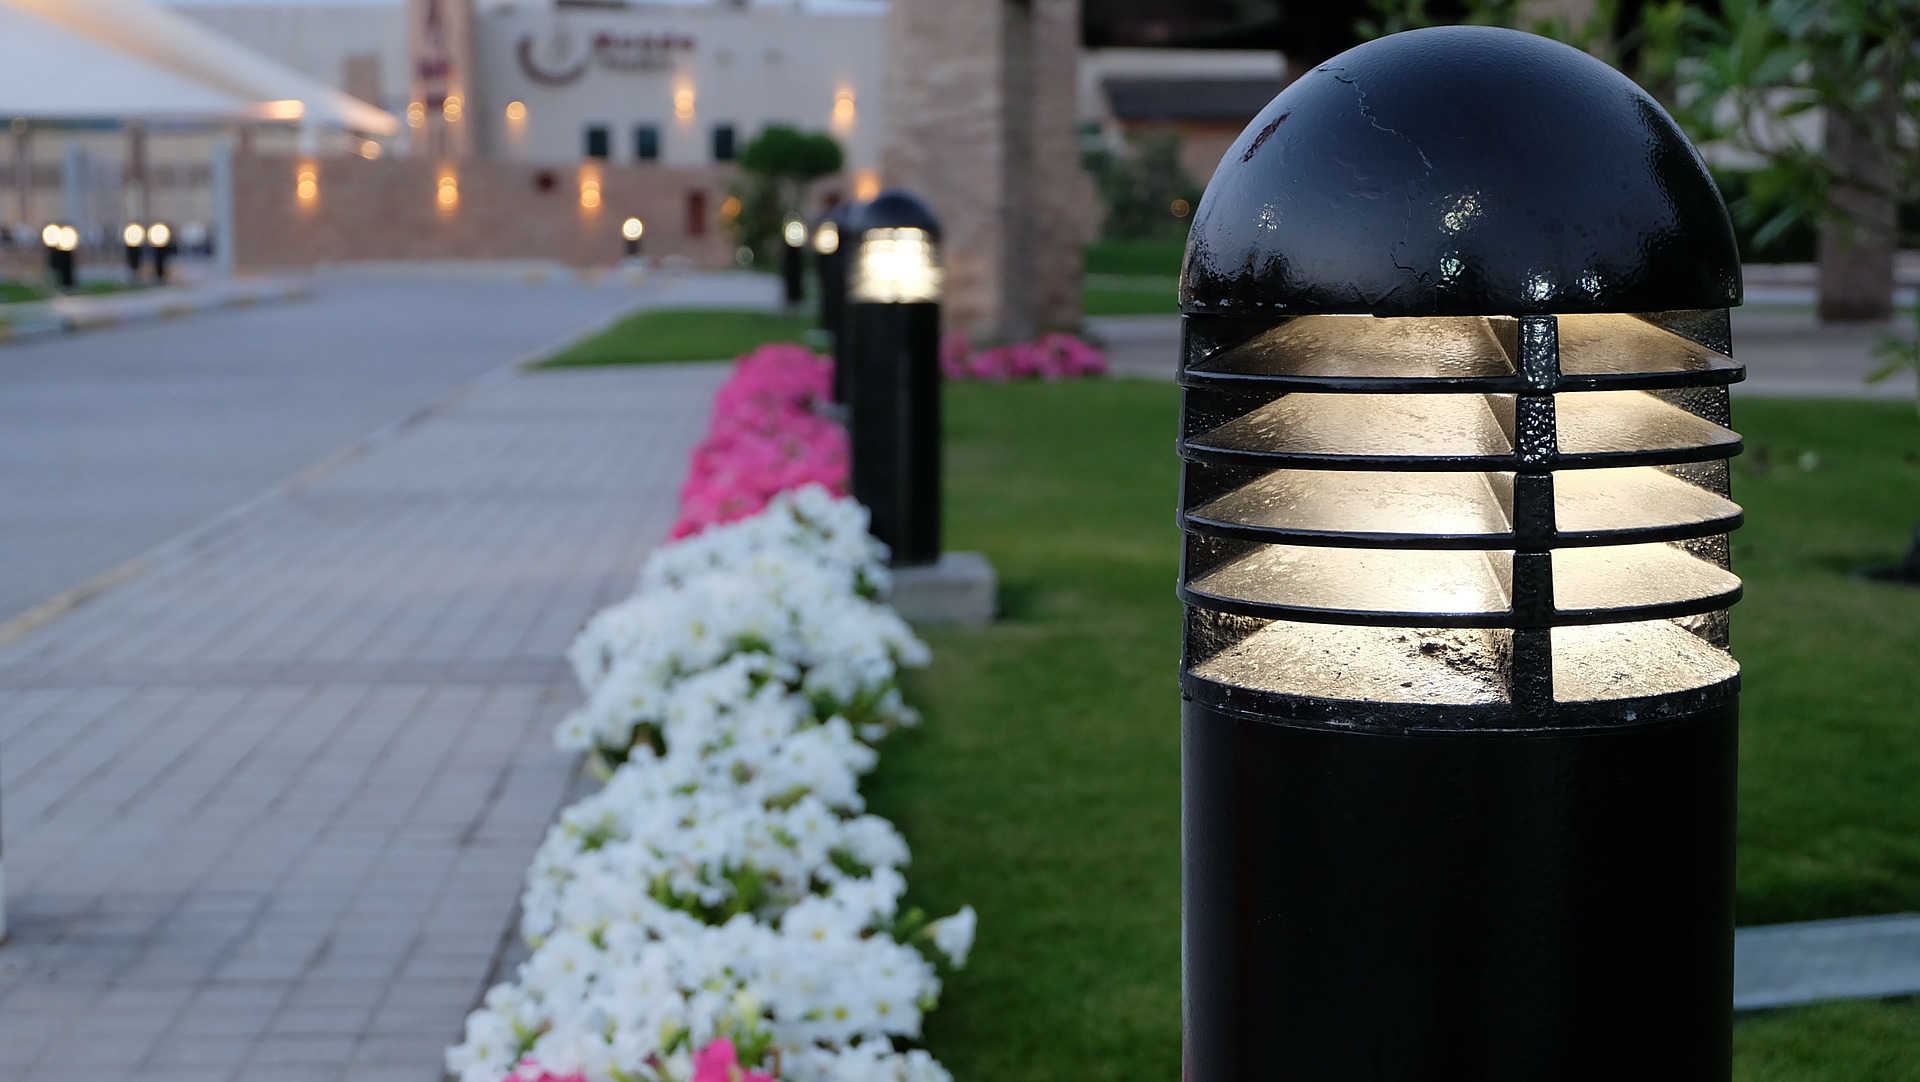 Solar Garden Lamps - Versatile, Easy to Install Outdoor Lighting